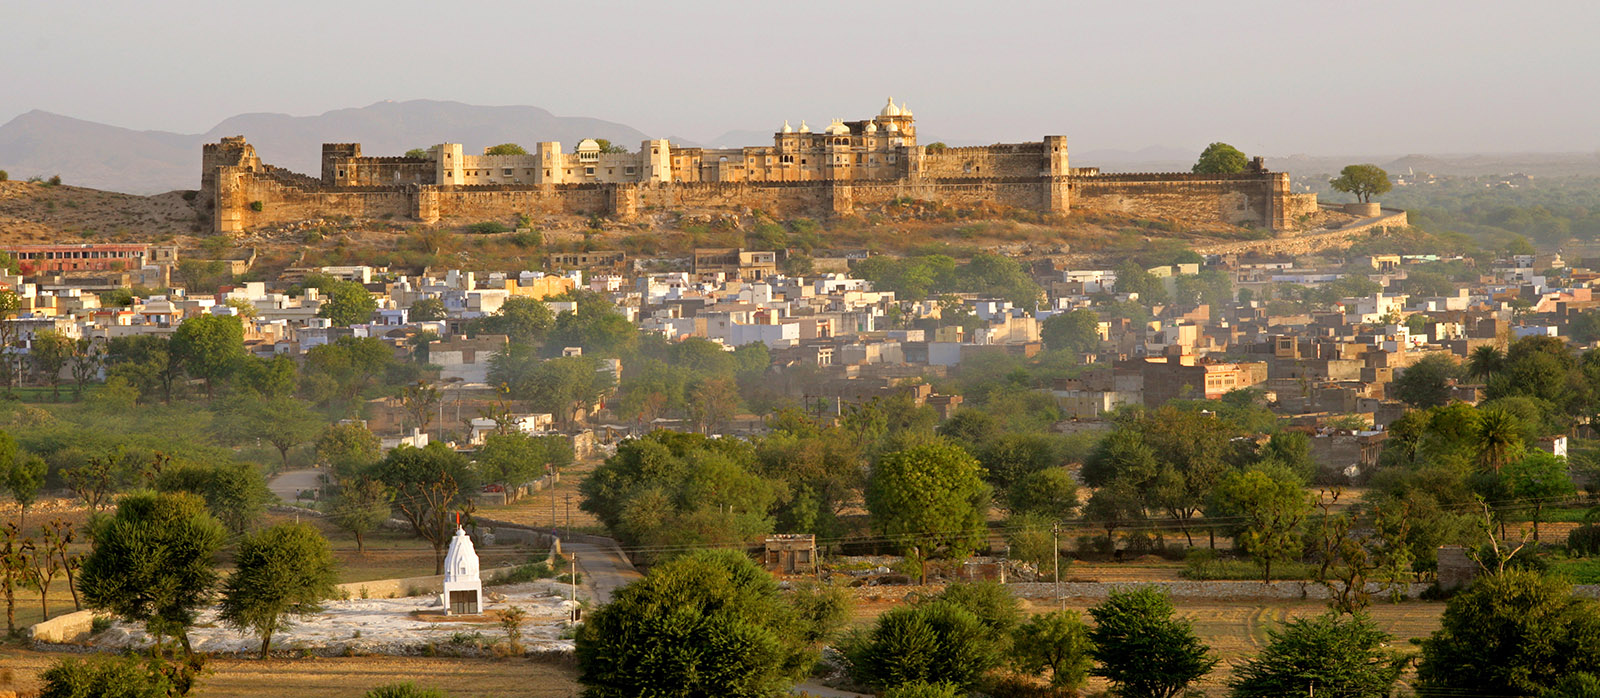 sardargarh fort and village